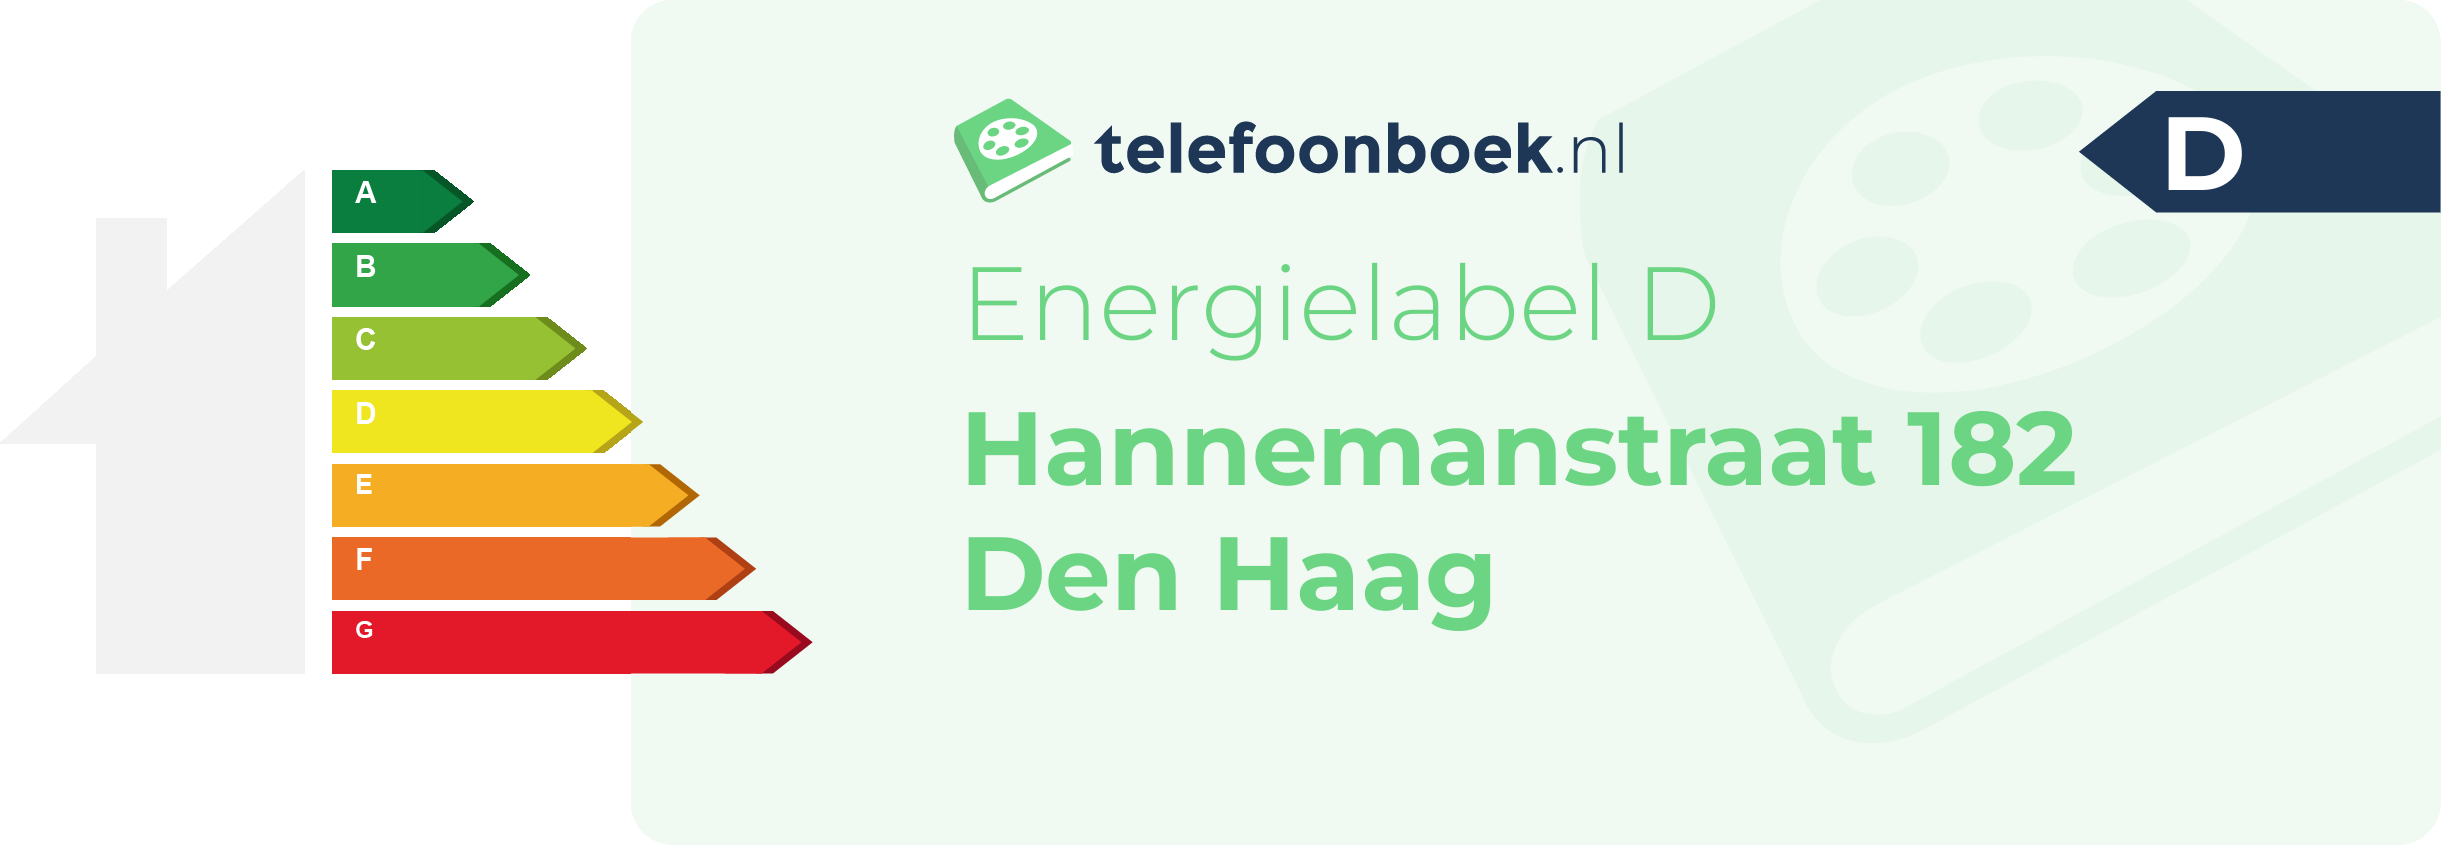 Energielabel Hannemanstraat 182 Den Haag